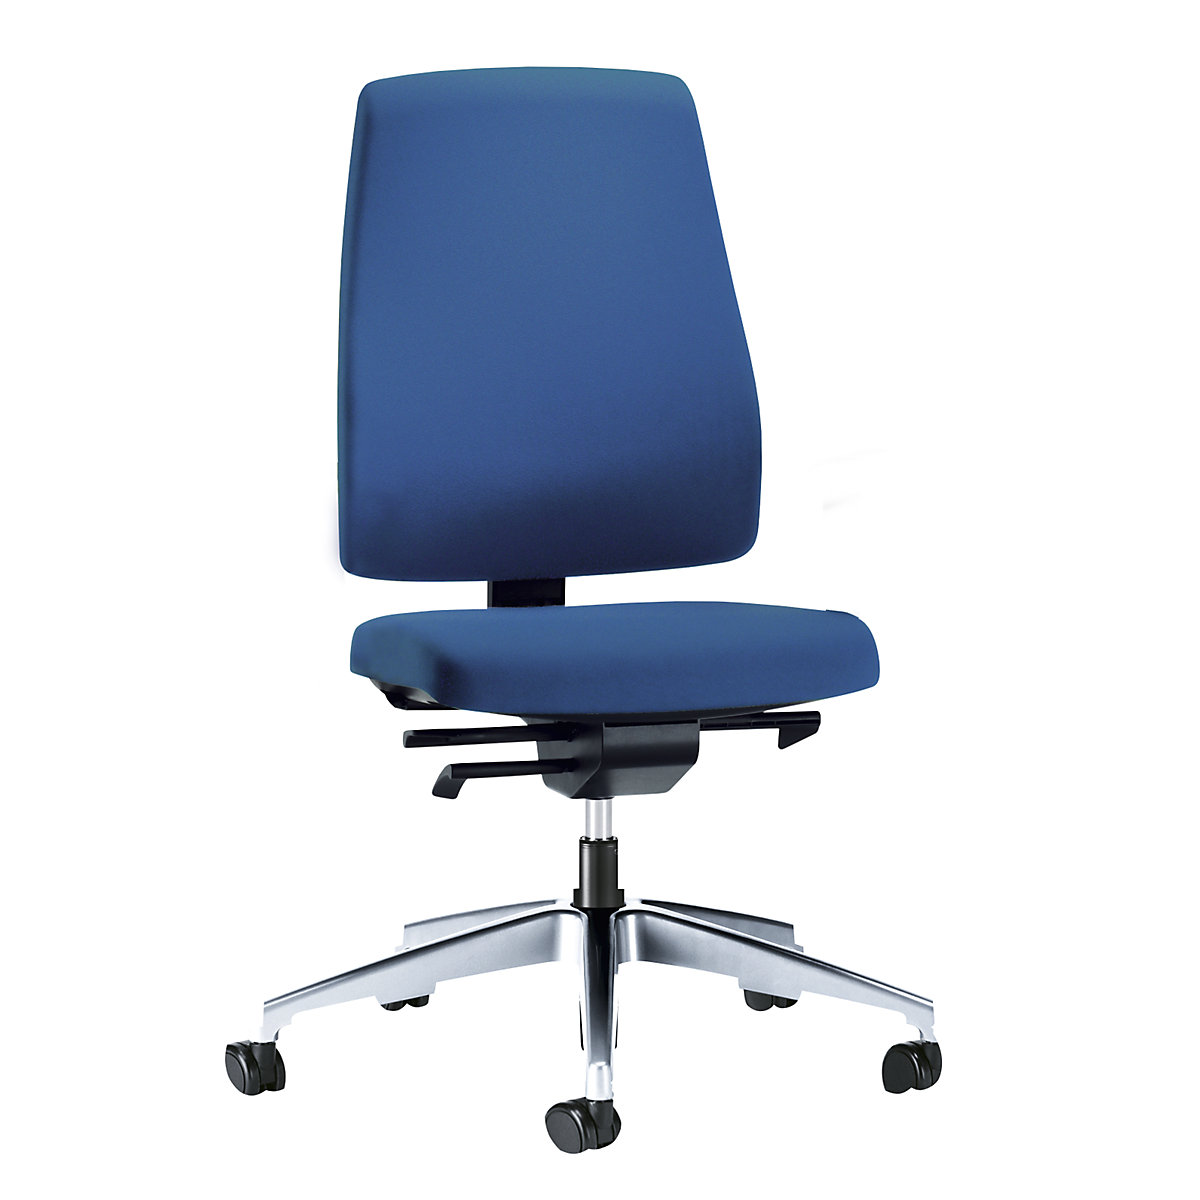 Sedia girevole per ufficio GOAL, altezza schienale 530 mm – interstuhl, telaio lucido, con rotelle morbide, blu genziana, profondità sedile 410 – 460 mm-5